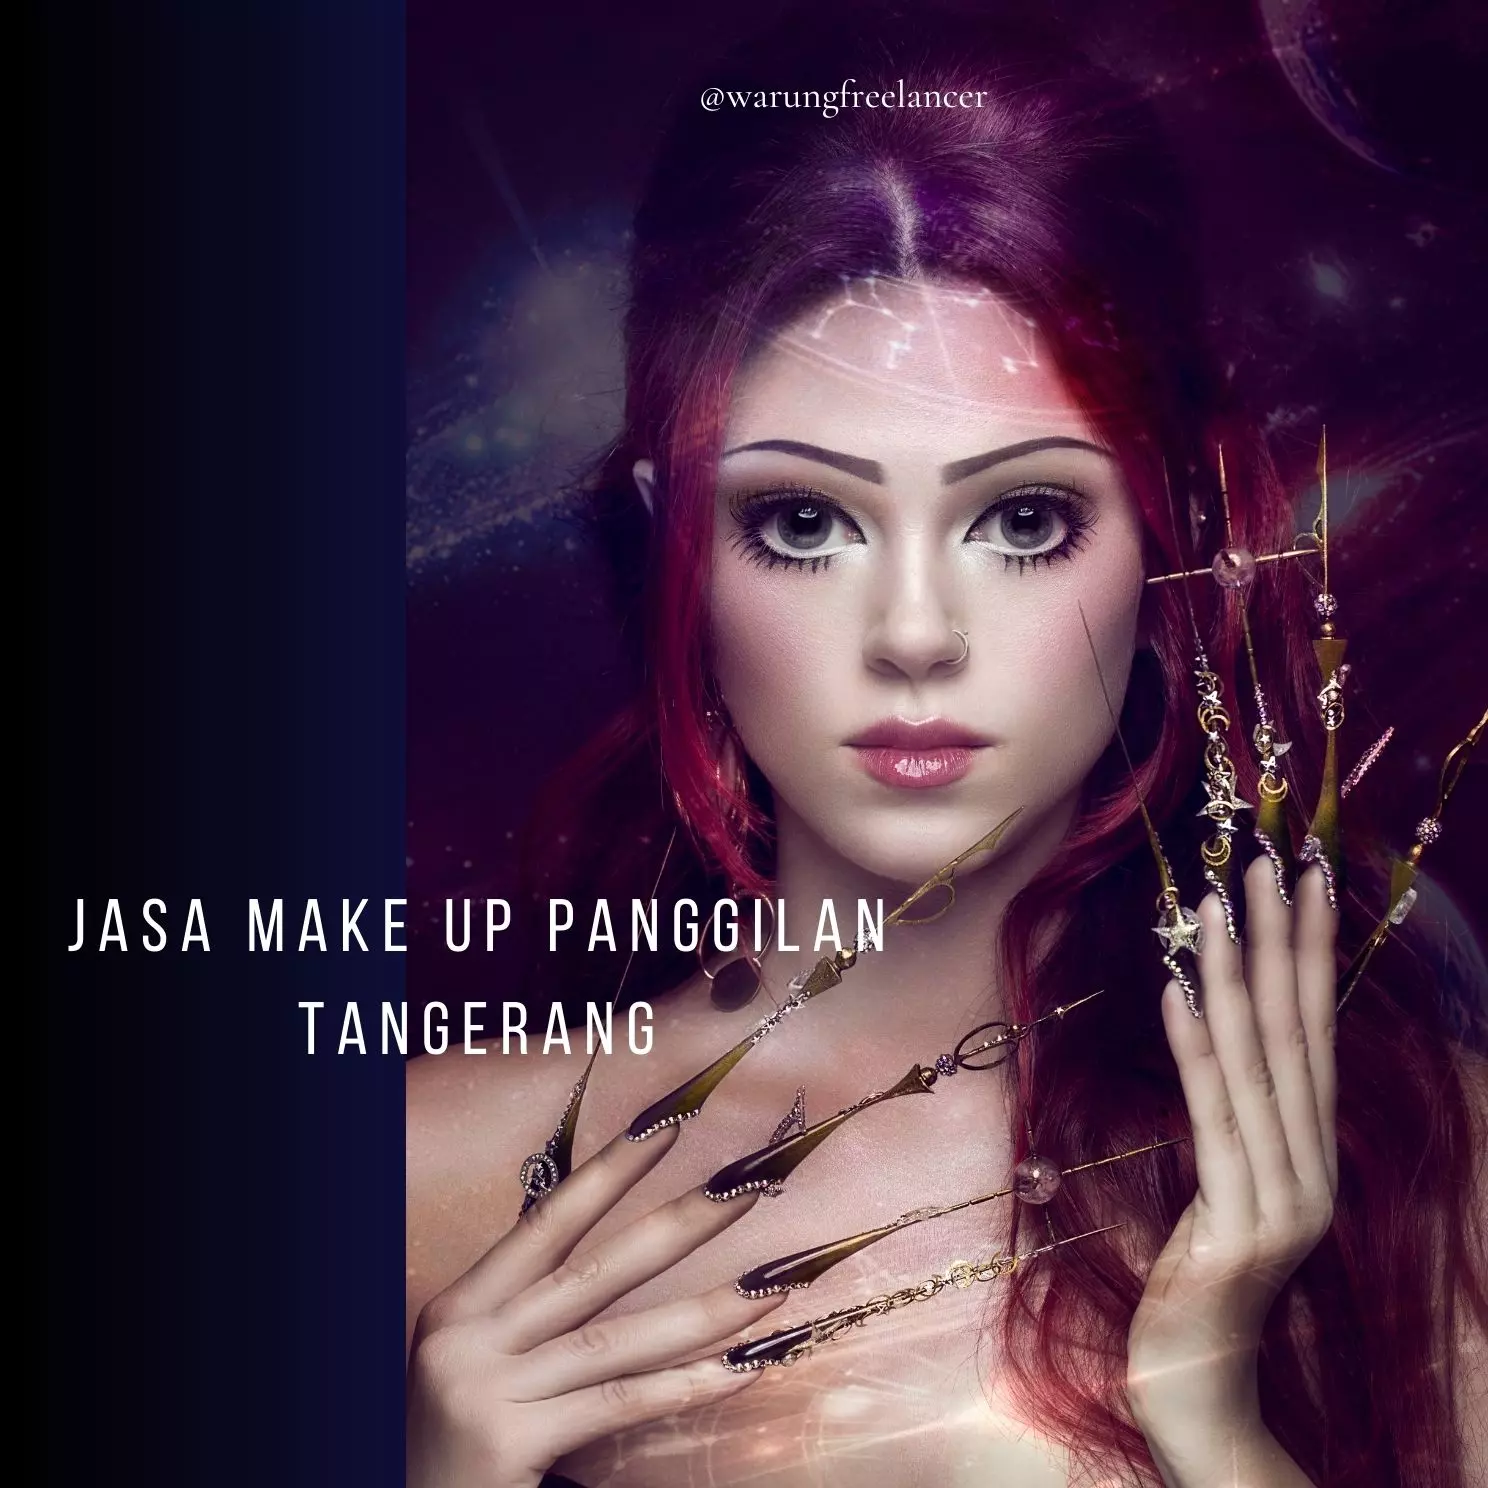 Jasa Make Up Panggilan Tangerang